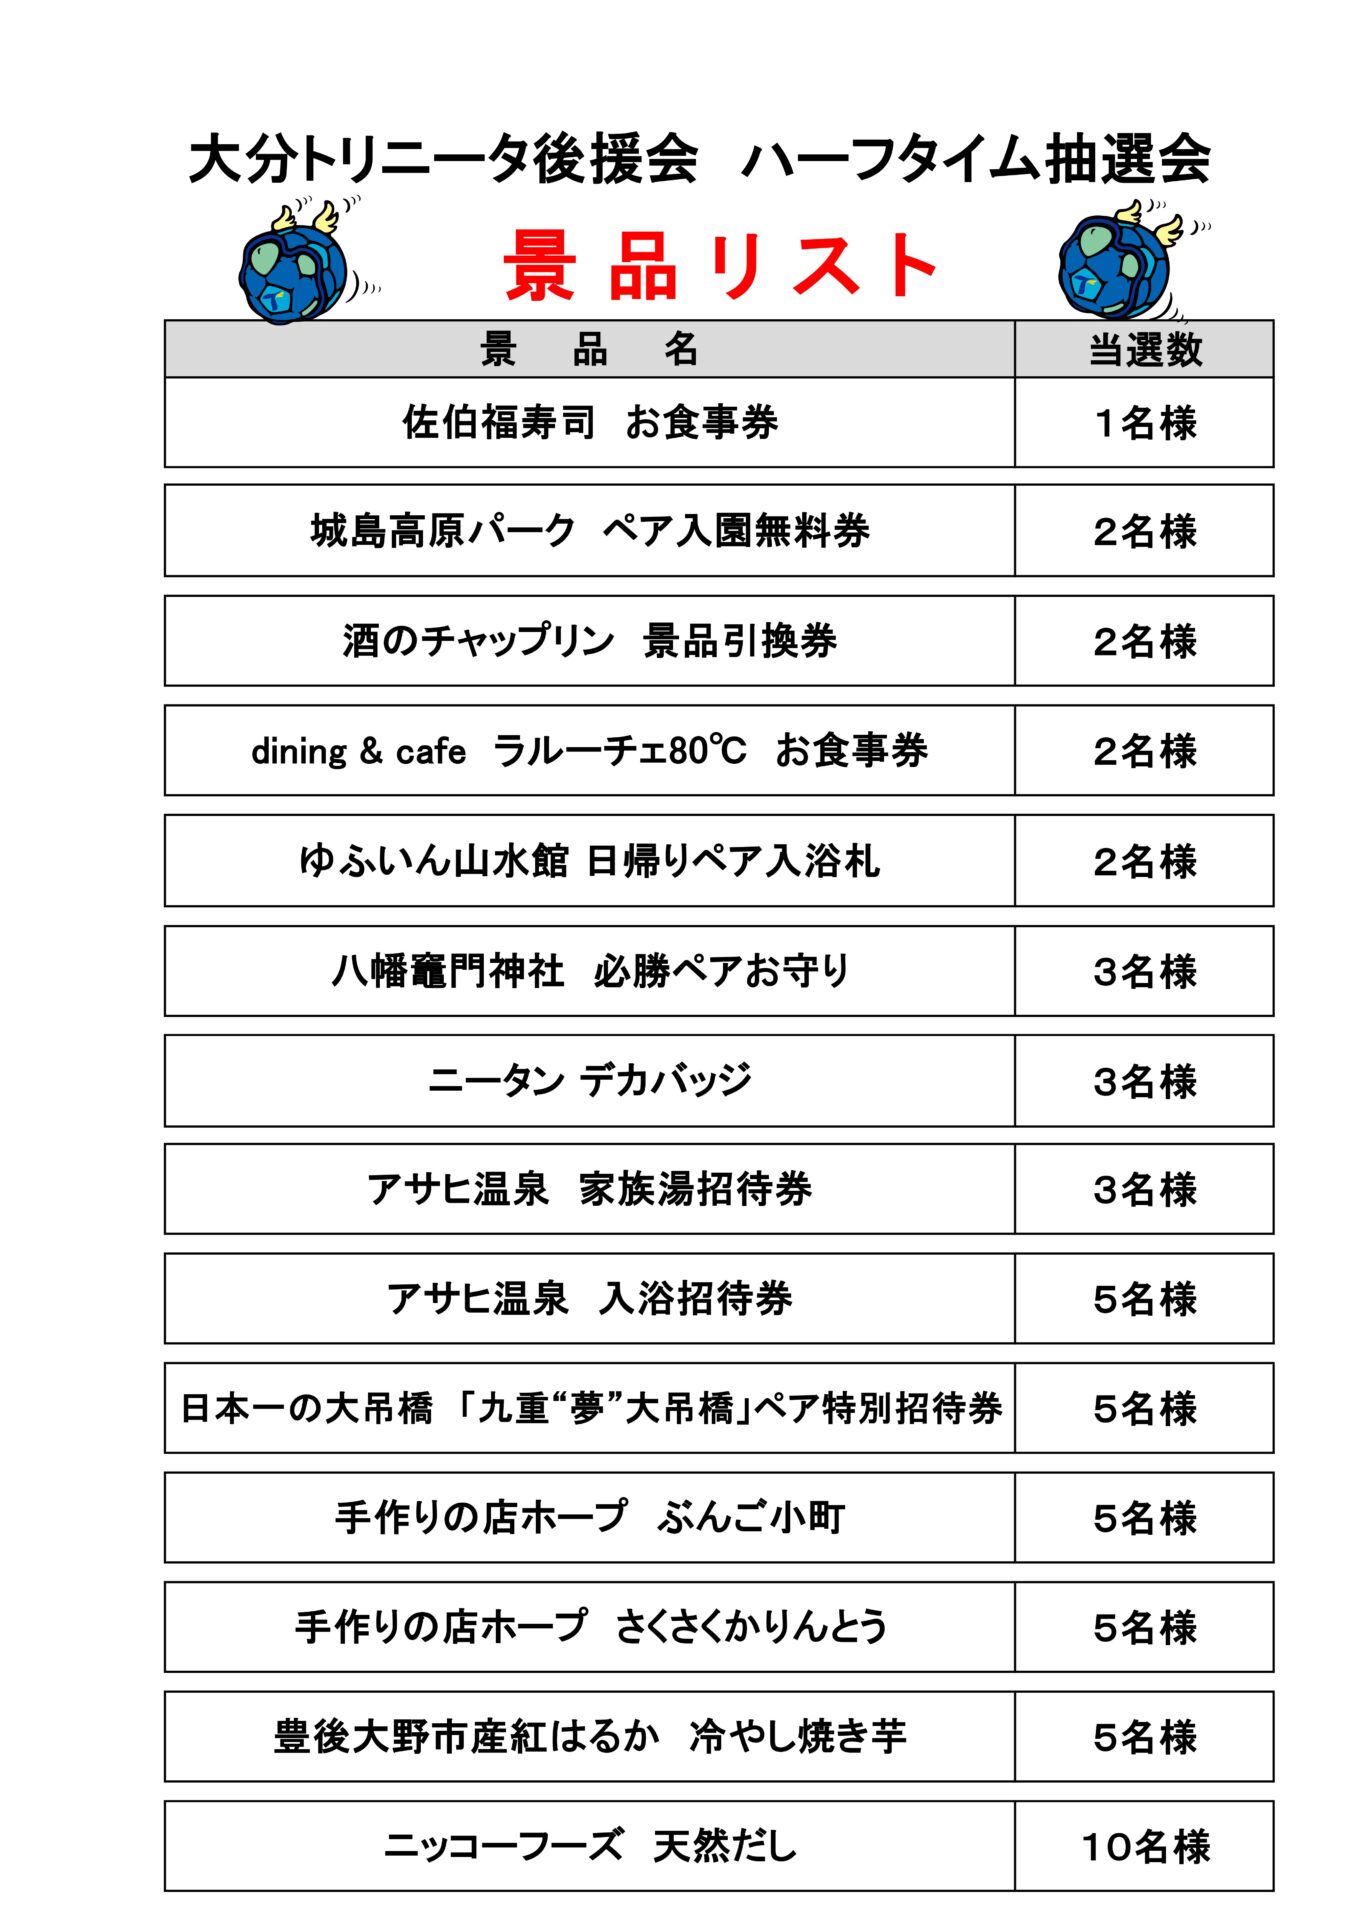 4/12(水)レノファ山口FC戦 ハーフタイム抽選会のお知らせ